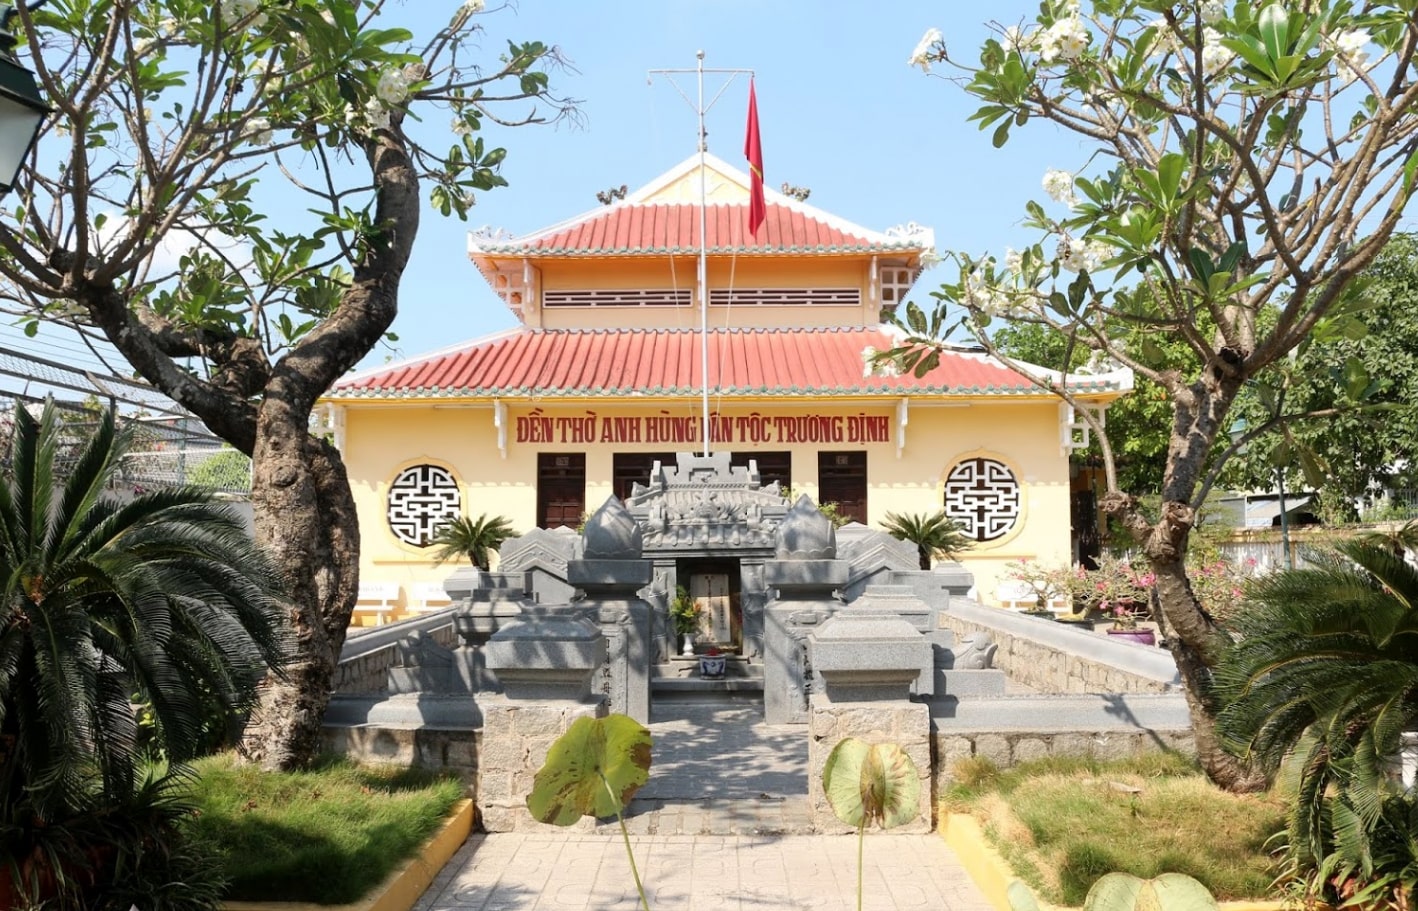 Viếng thăm Di tích lăng mộ và đền thờ Trương Định tại Gò Công 6